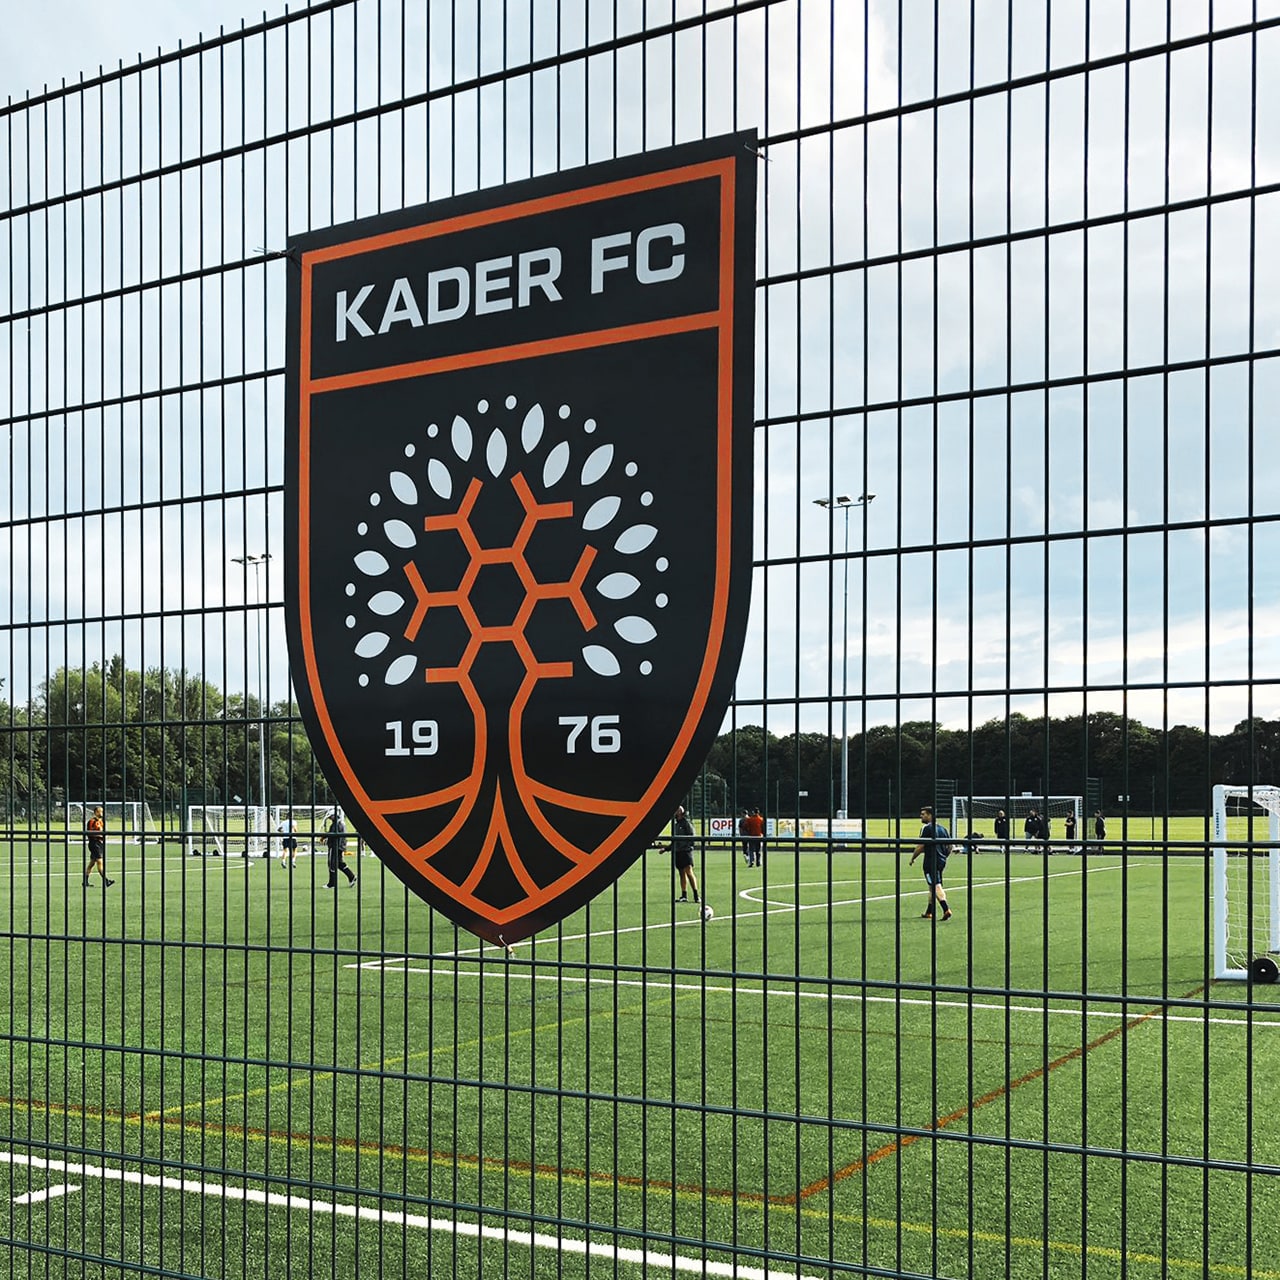 Kader Football Club Crest Design}